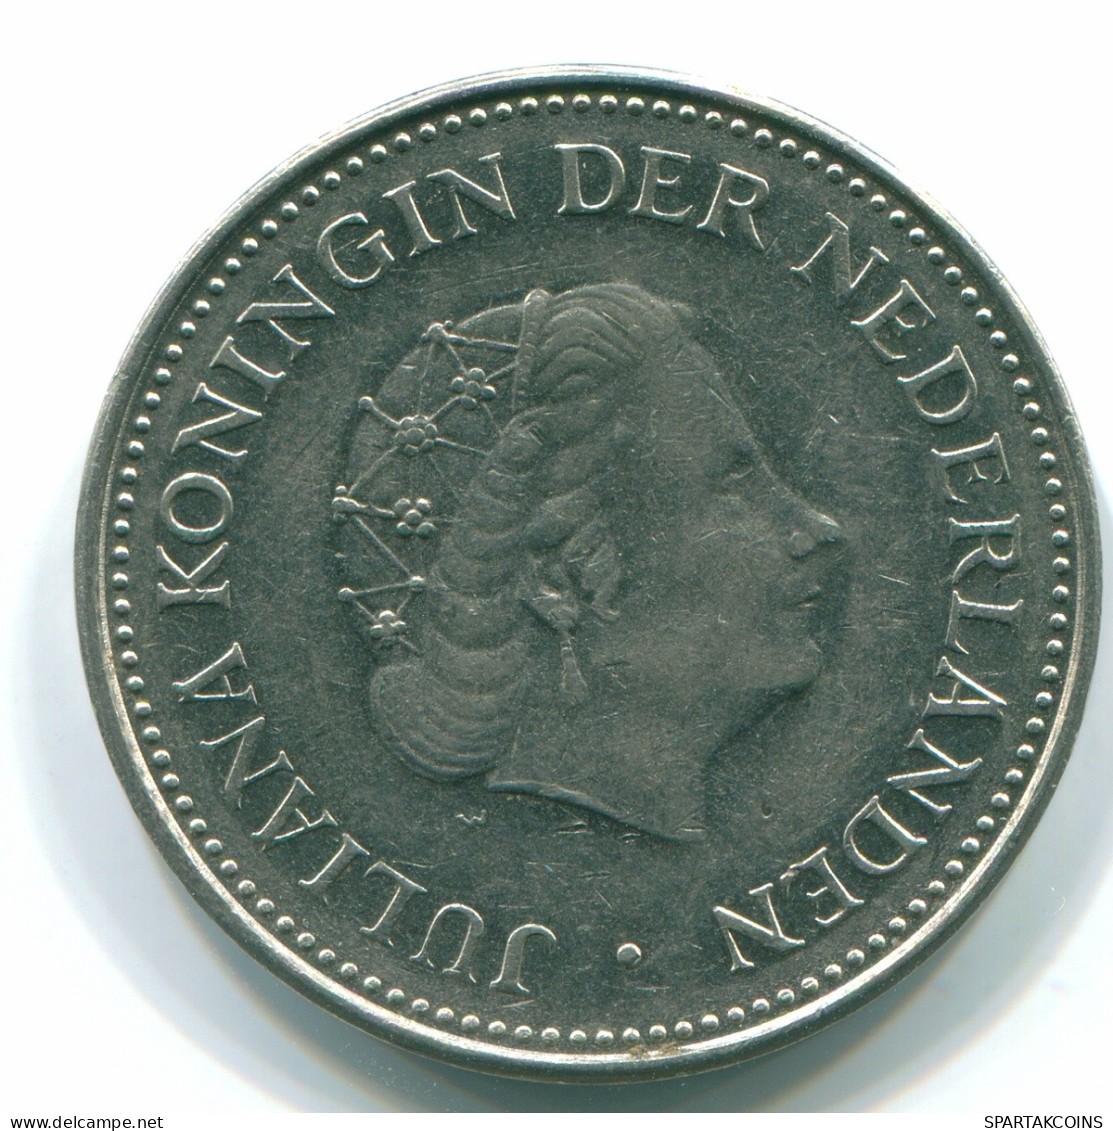 1 GULDEN 1971 ANTILLAS NEERLANDESAS Nickel Colonial Moneda #S11986.E.A - Netherlands Antilles